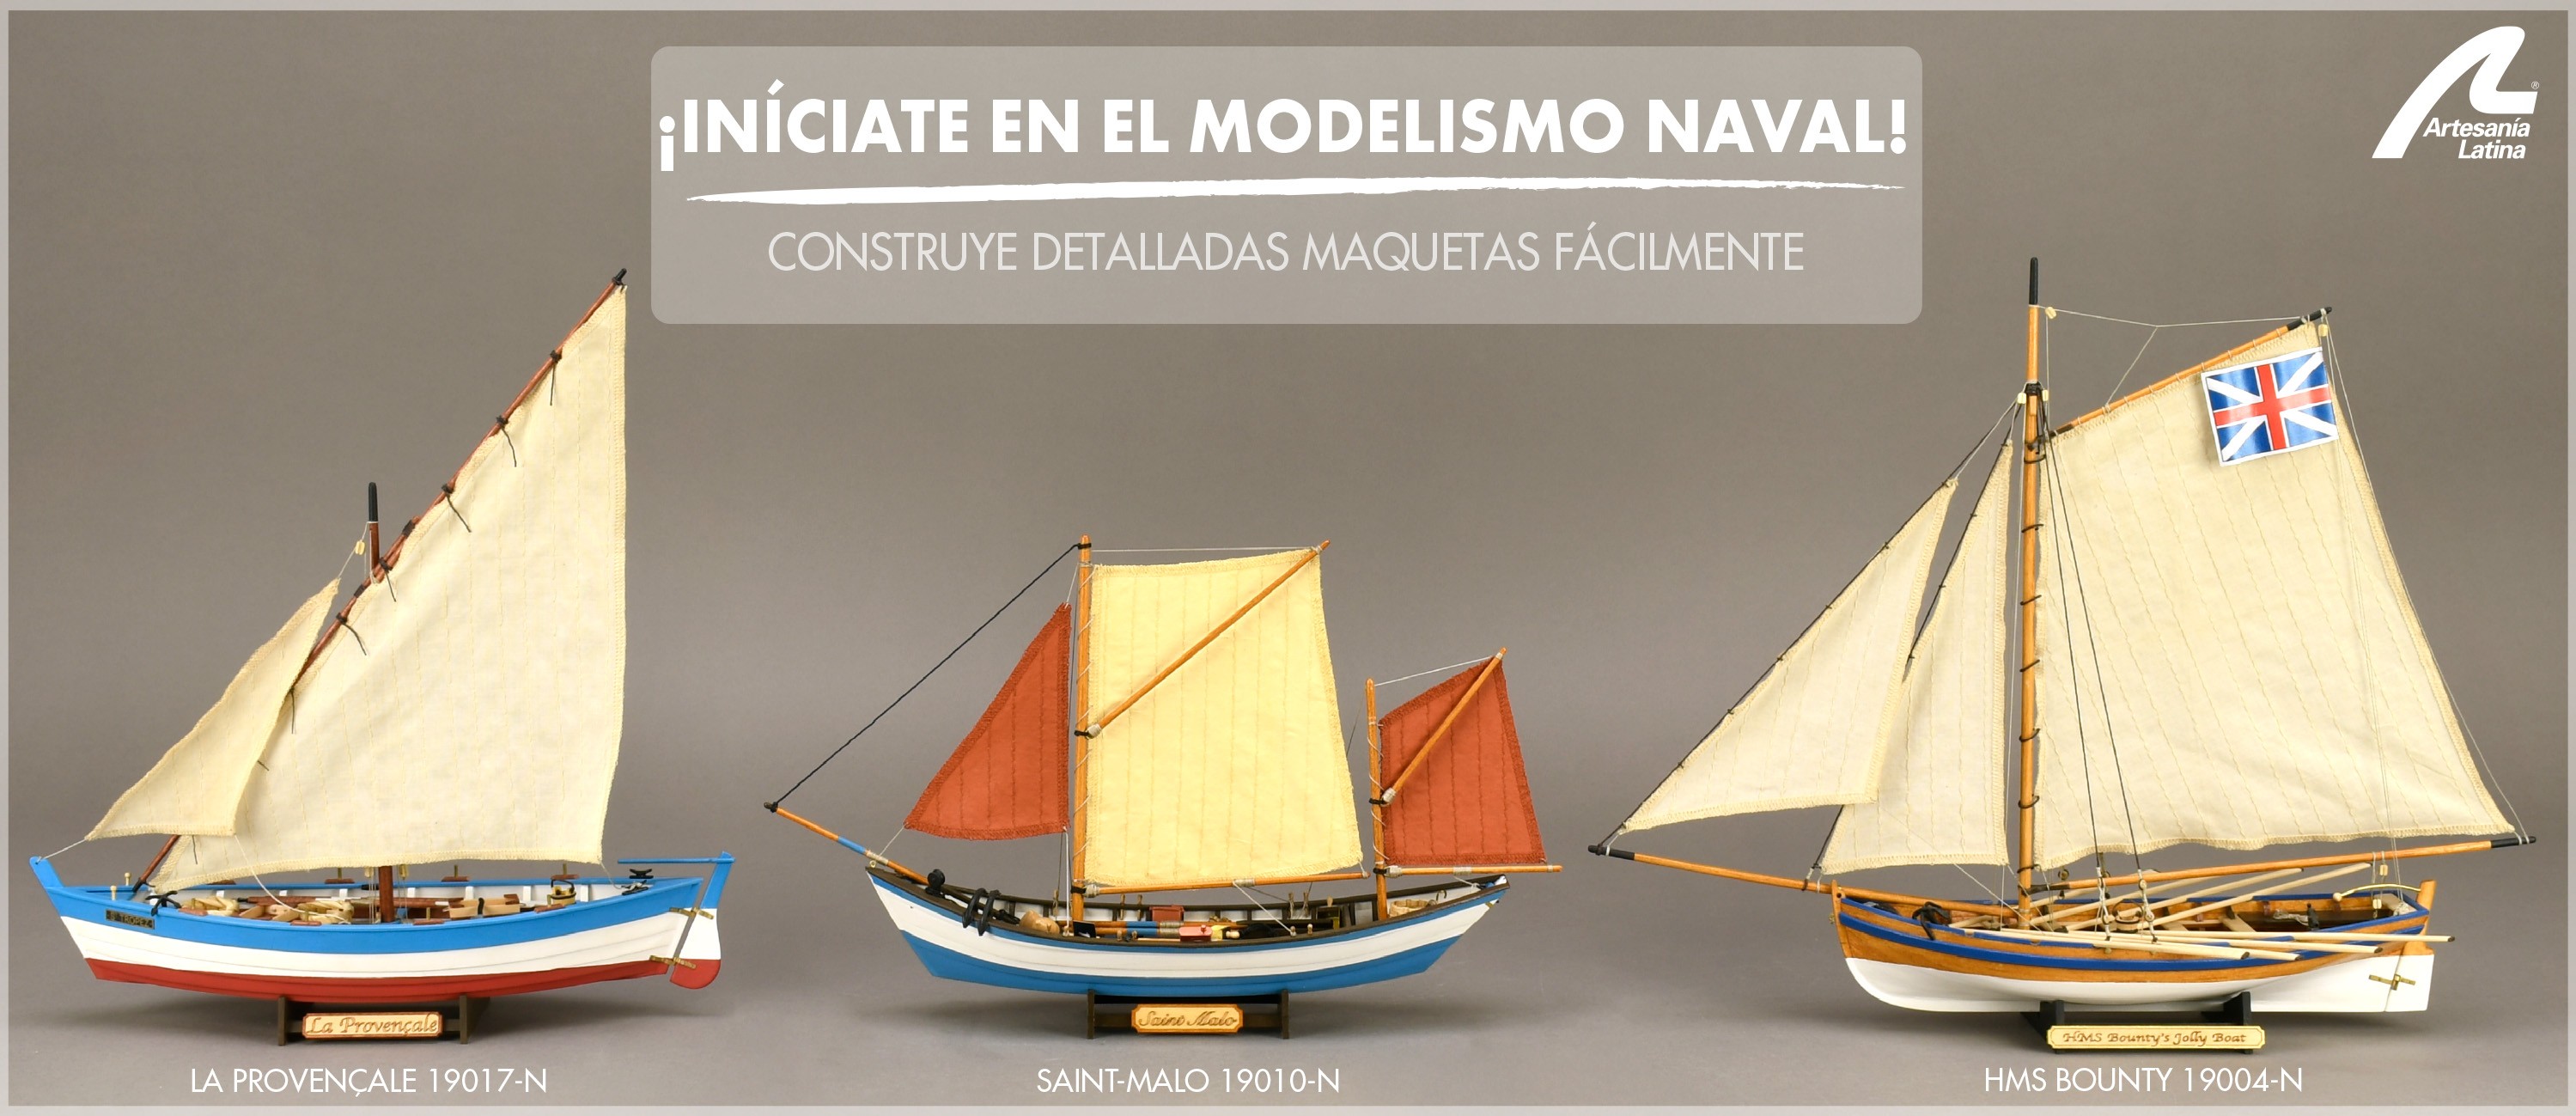 Blanco Importancia Mantenimiento Expertos en Modelismo Naval. Maquetas, Herramientas y Accesorios.